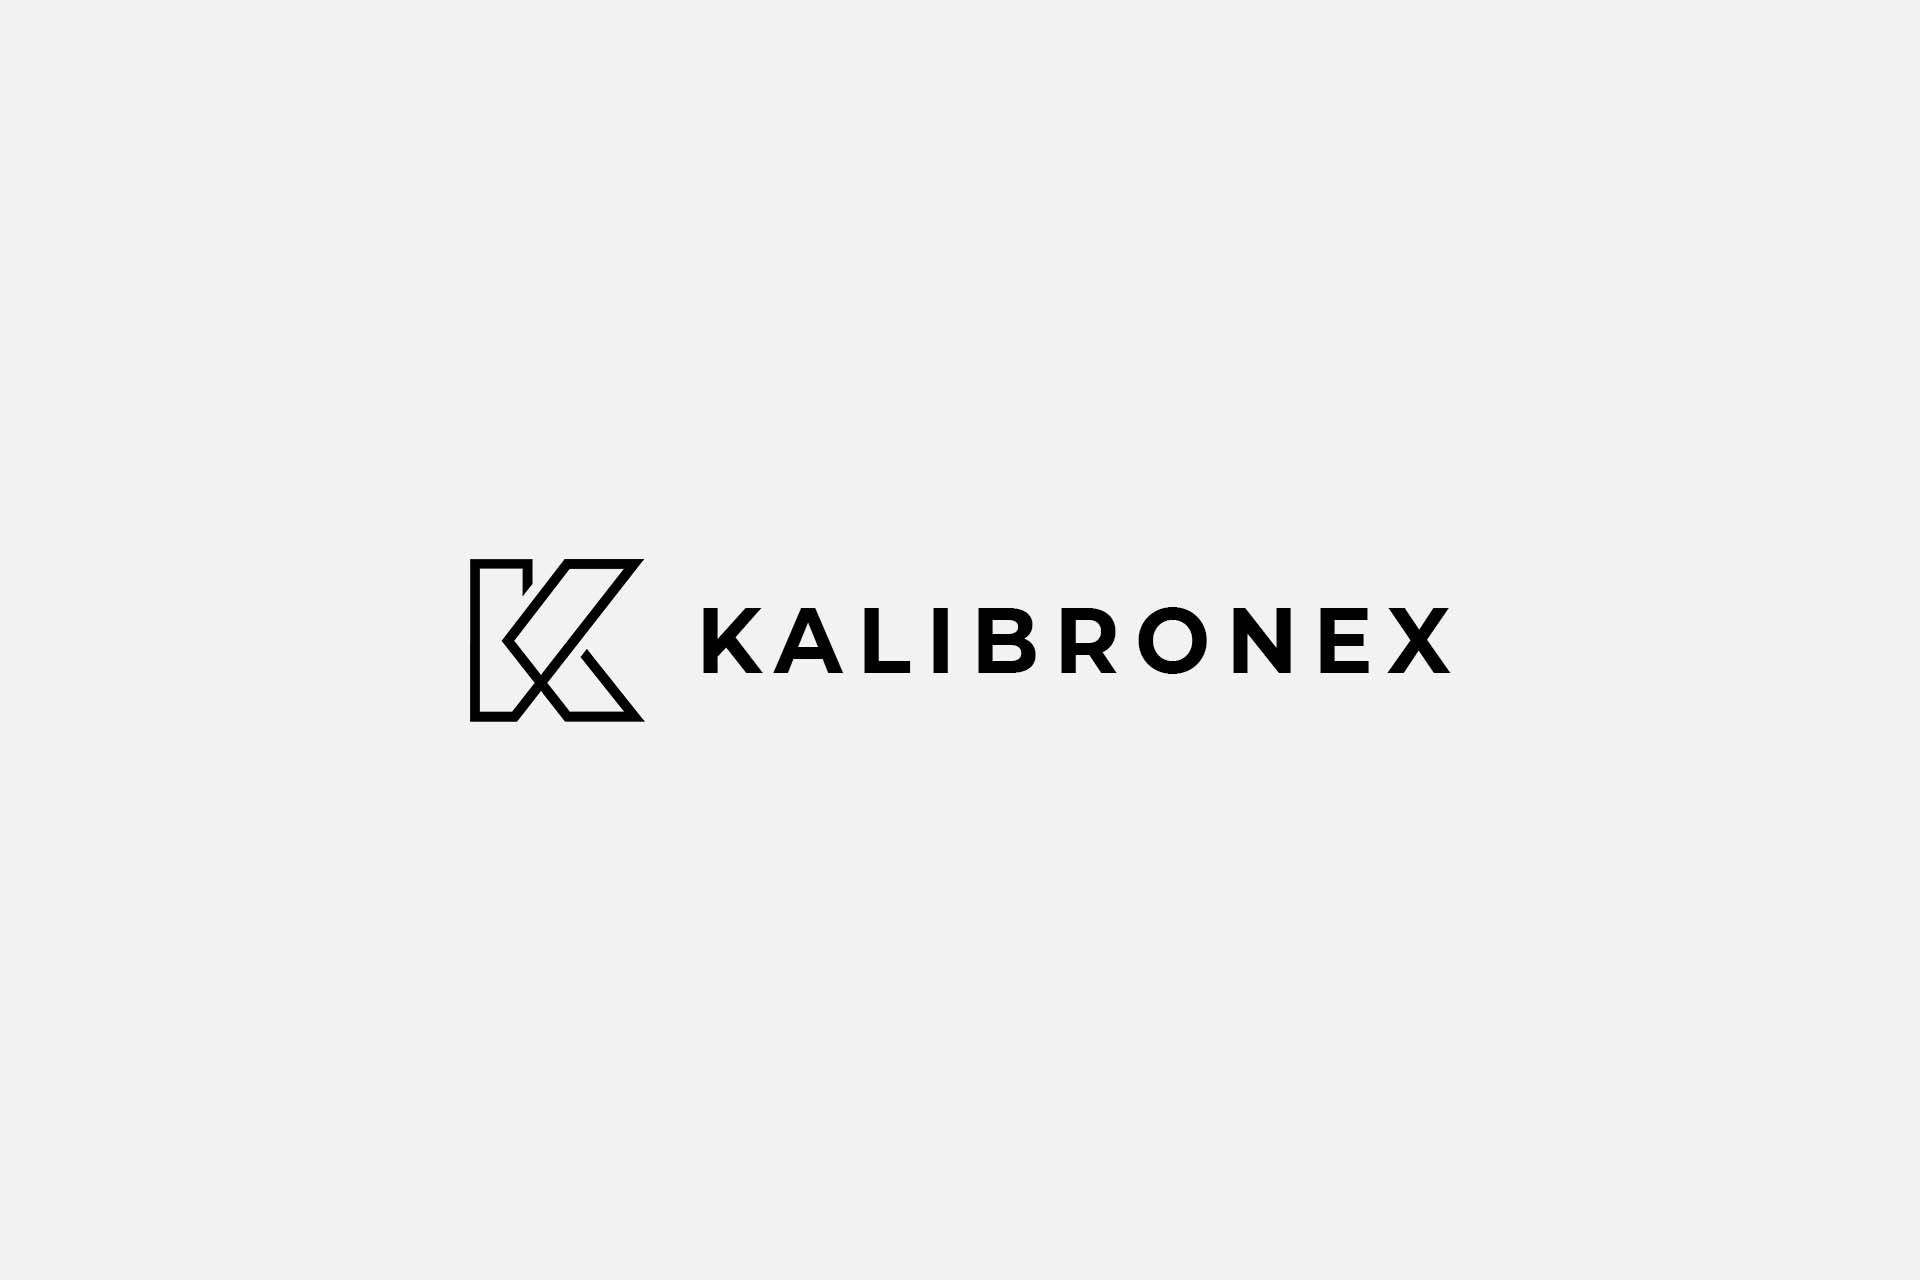 Logo for a manufacturing company Kalibronex